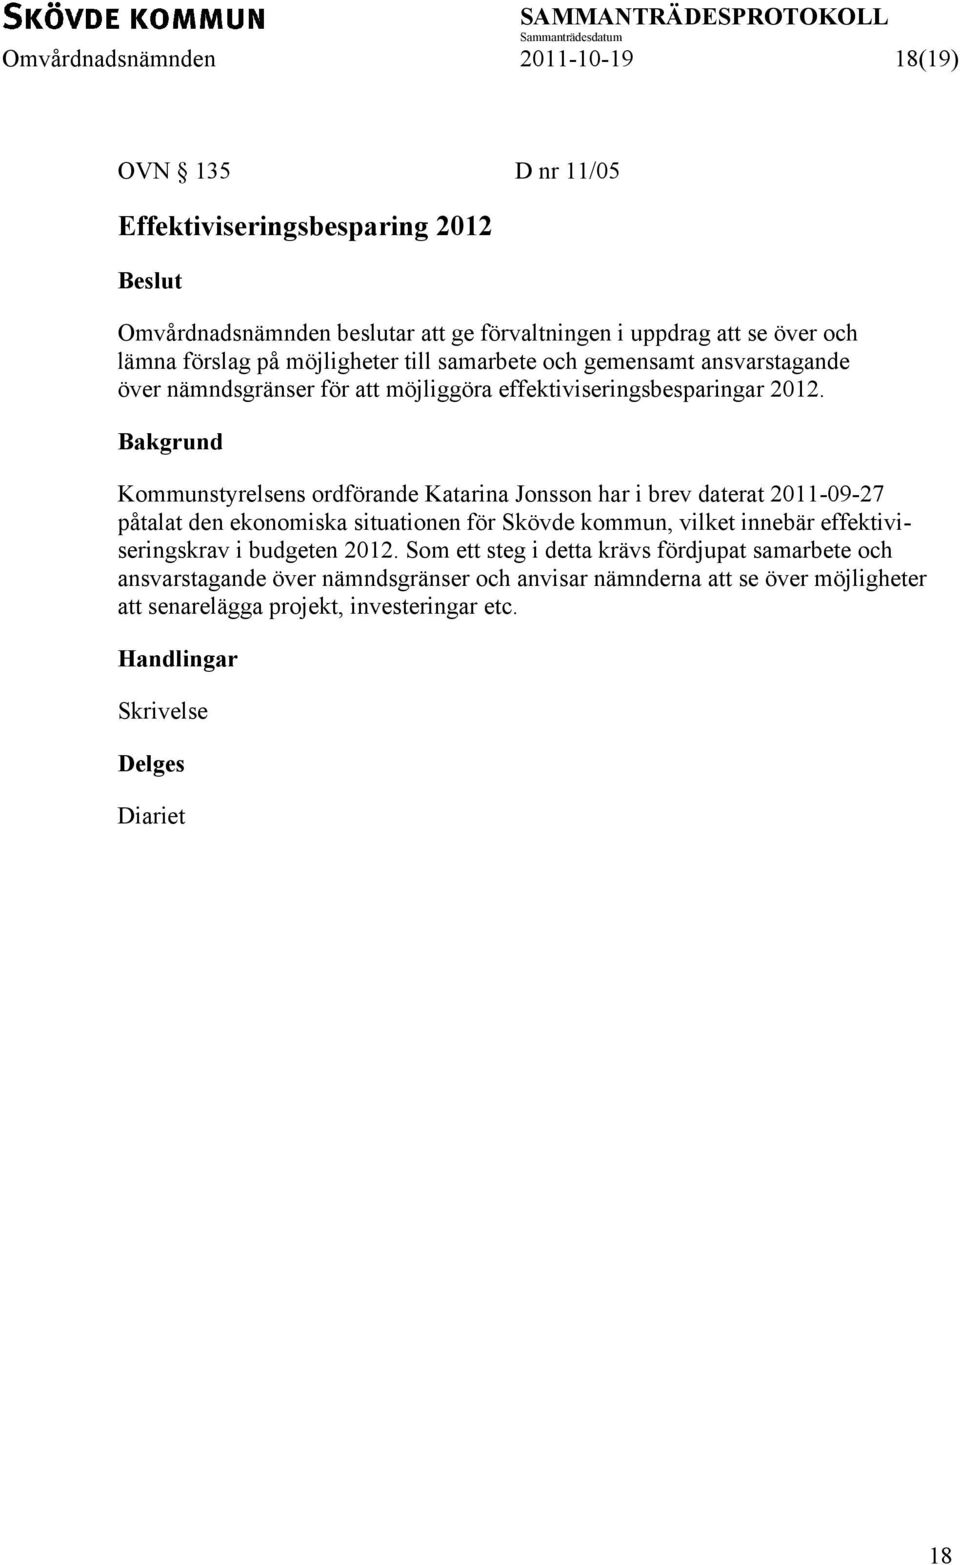 Kommunstyrelsens ordförande Katarina Jonsson har i brev daterat 2011-09-27 påtalat den ekonomiska situationen för Skövde kommun, vilket innebär effektiviseringskrav i